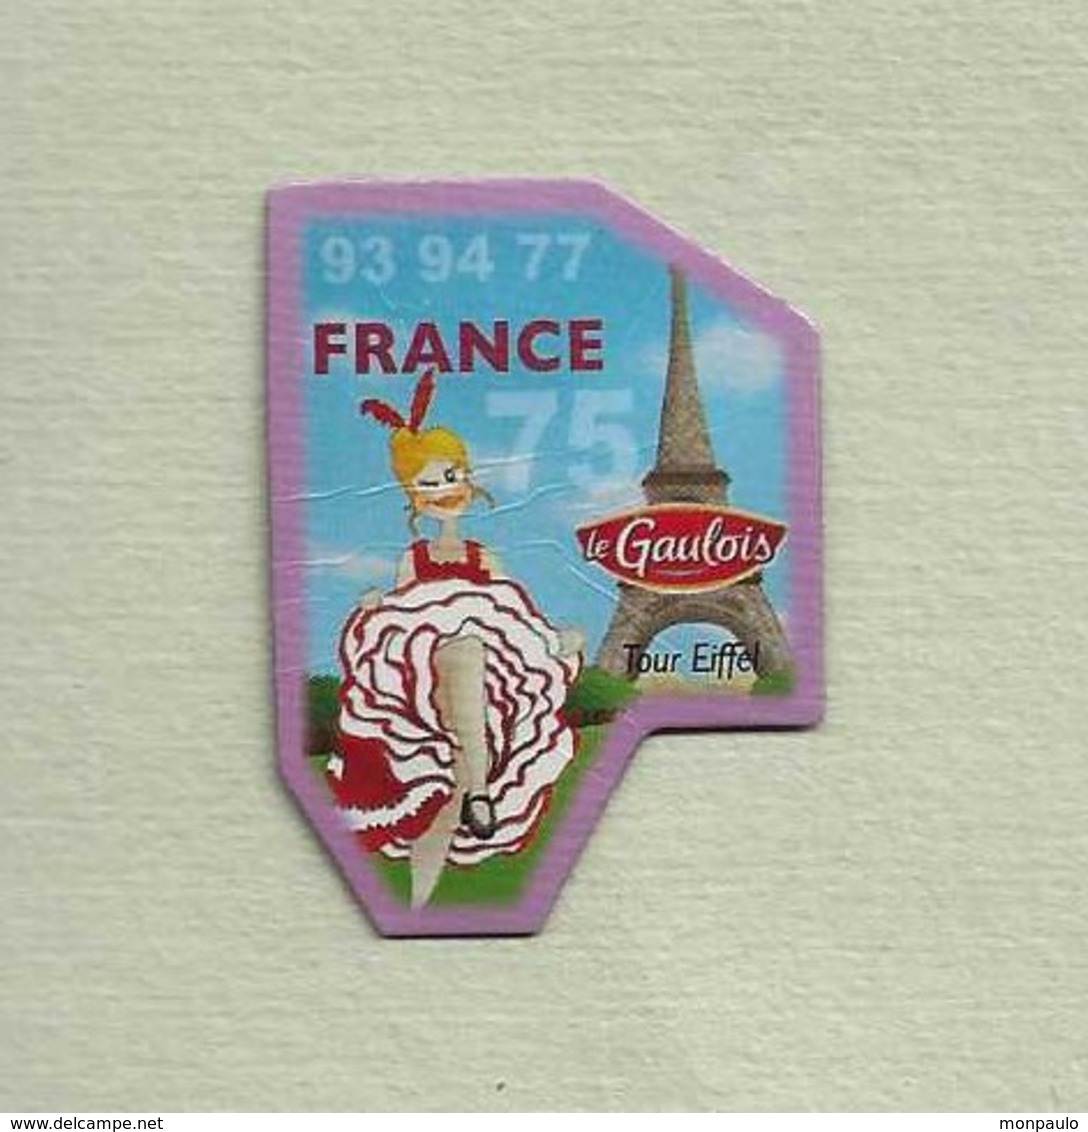 Magnets. Magnets "Le Gaulois" Départements Français. France (75-77-93-94) - Publicidad